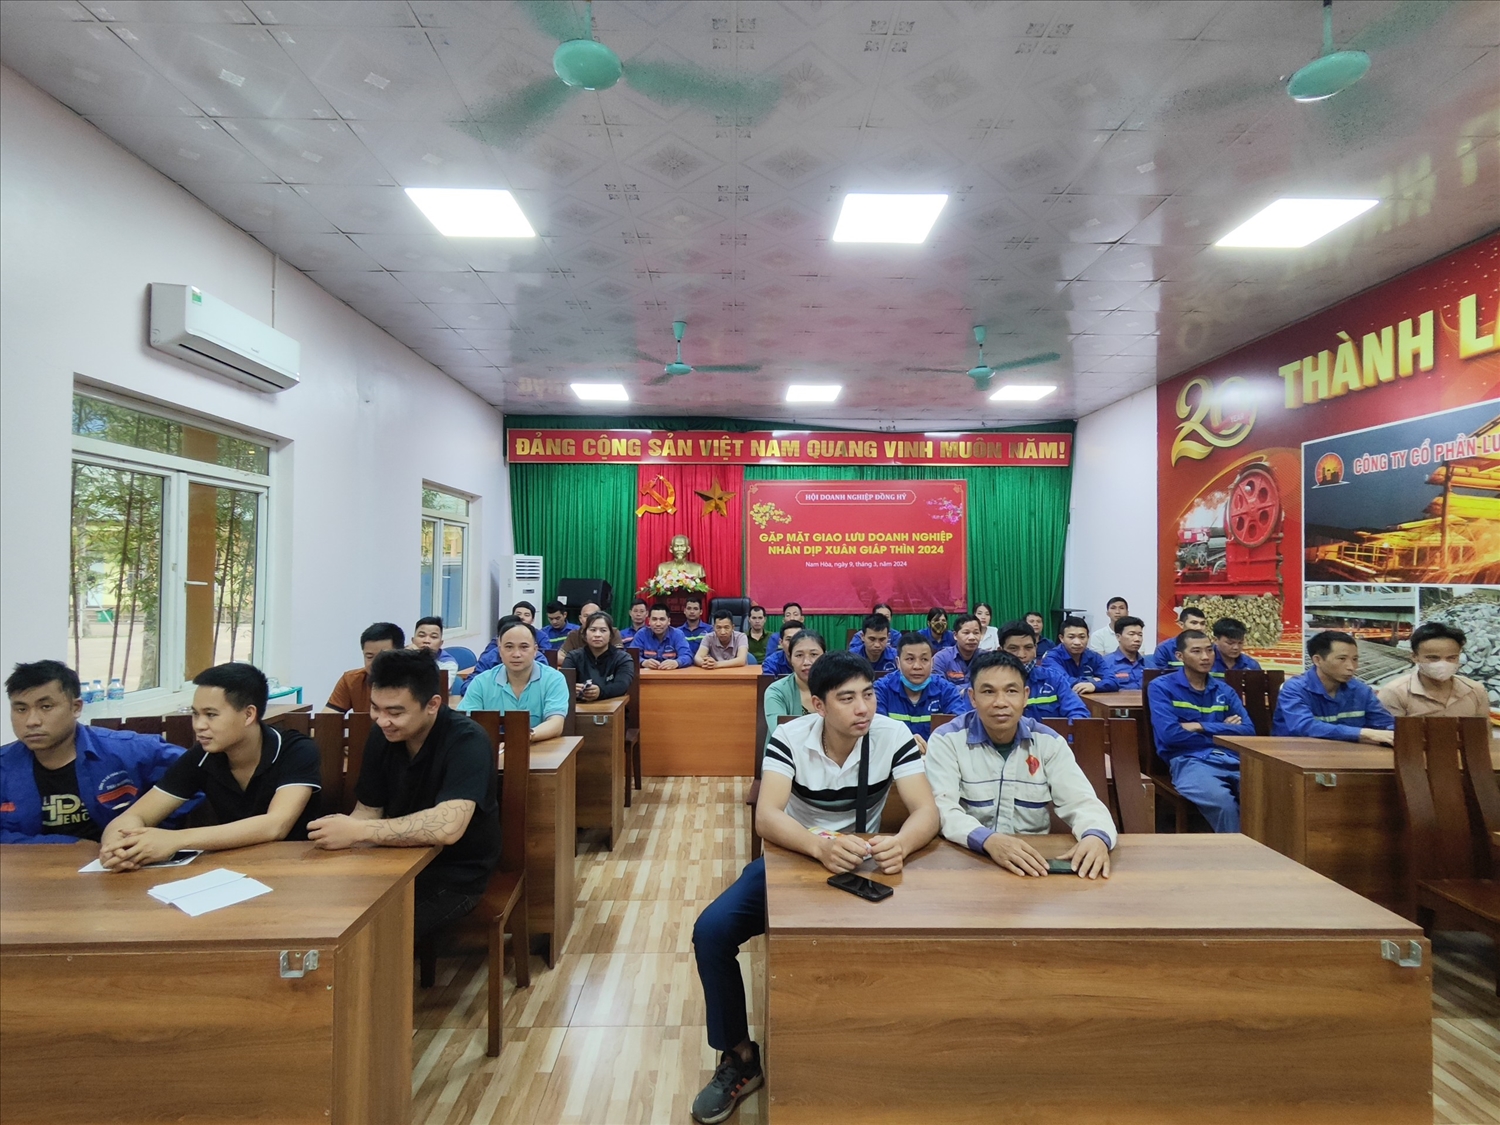 Hàng năm Công ty còn phối hợp với các trường đào tạo nghề trên địa bàn tỉnh Thái Nguyên để tổ chức đào tạo nghề cho cán bộ, công nhân người lao động...